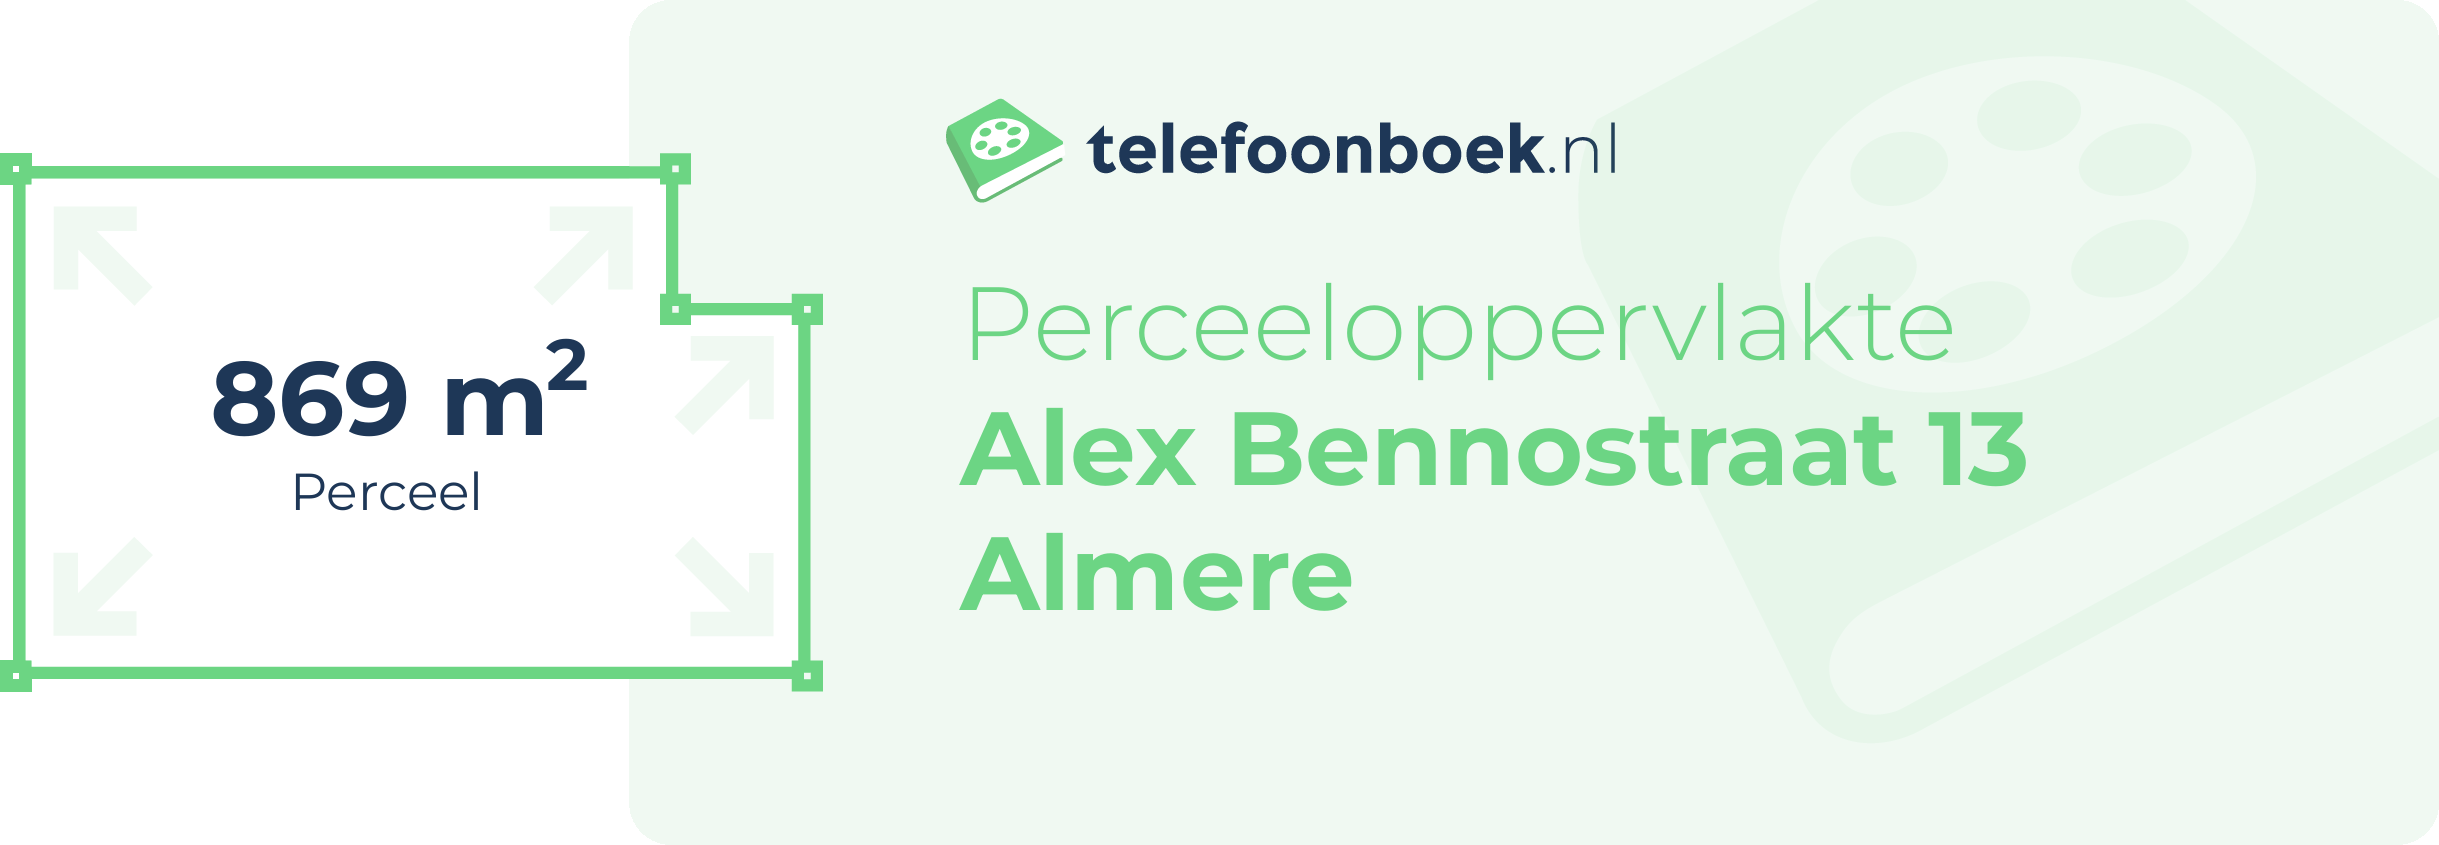 Perceeloppervlakte Alex Bennostraat 13 Almere